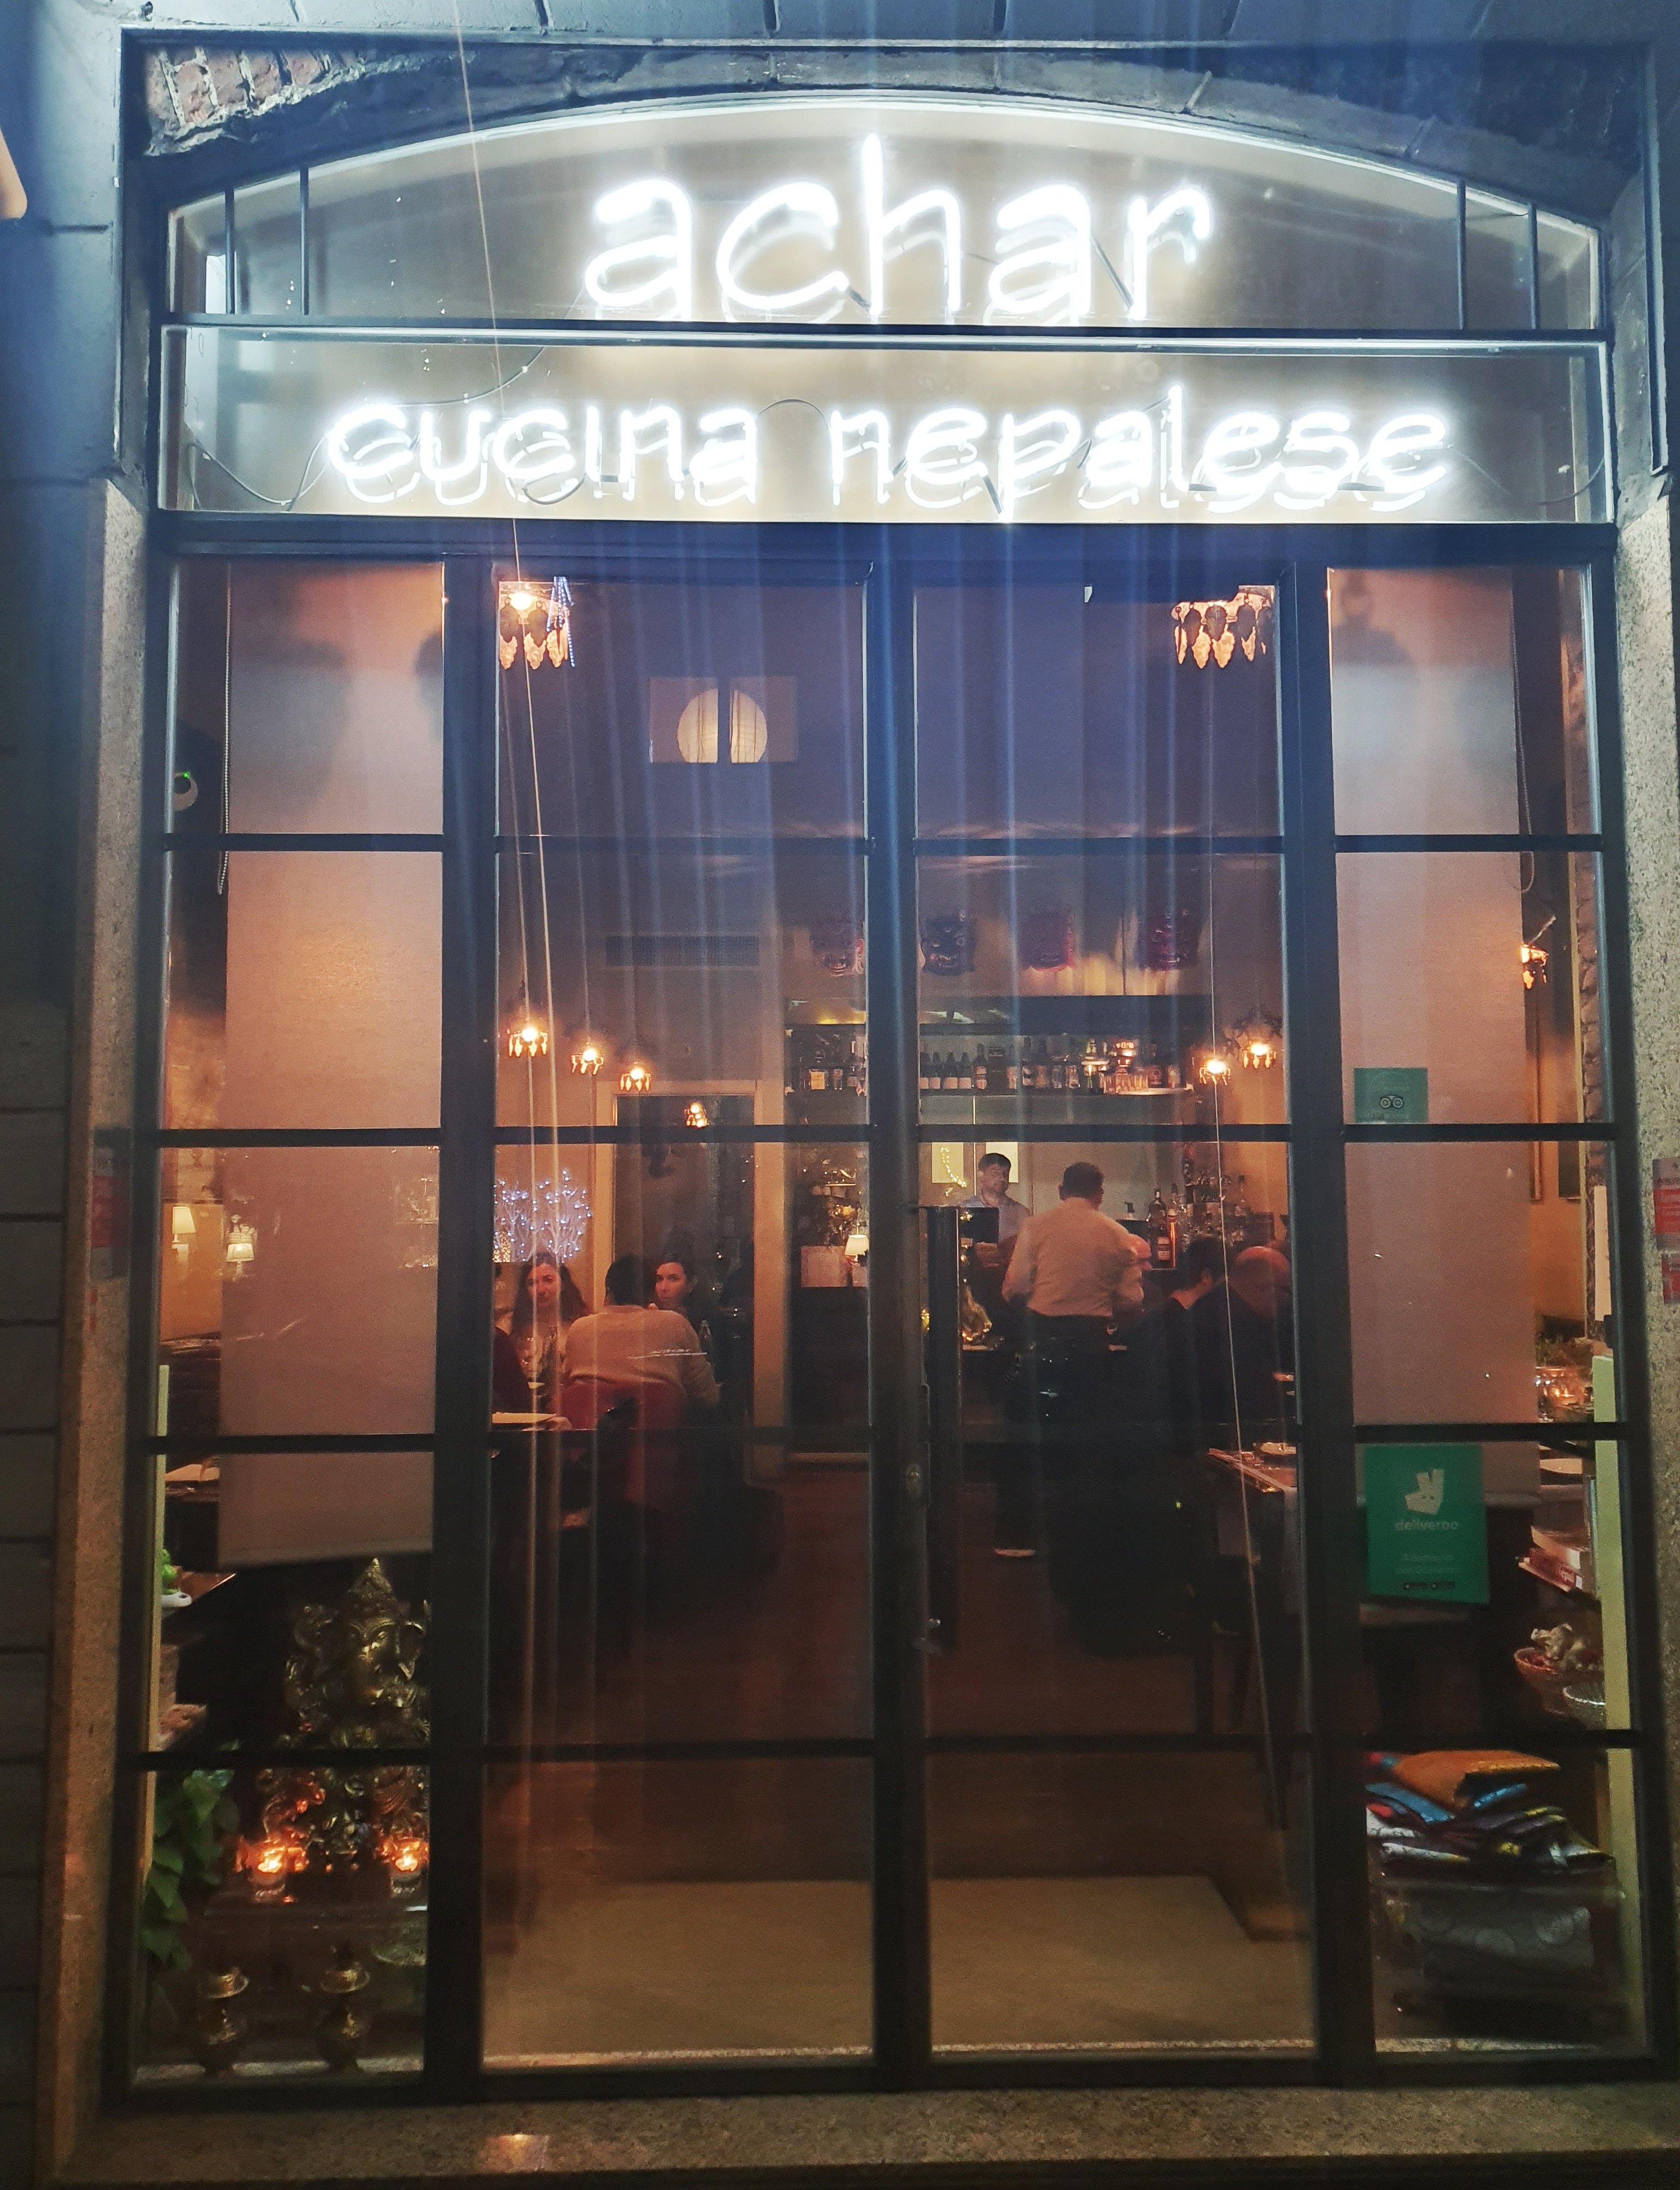 achar a milano, ristorante nepalese